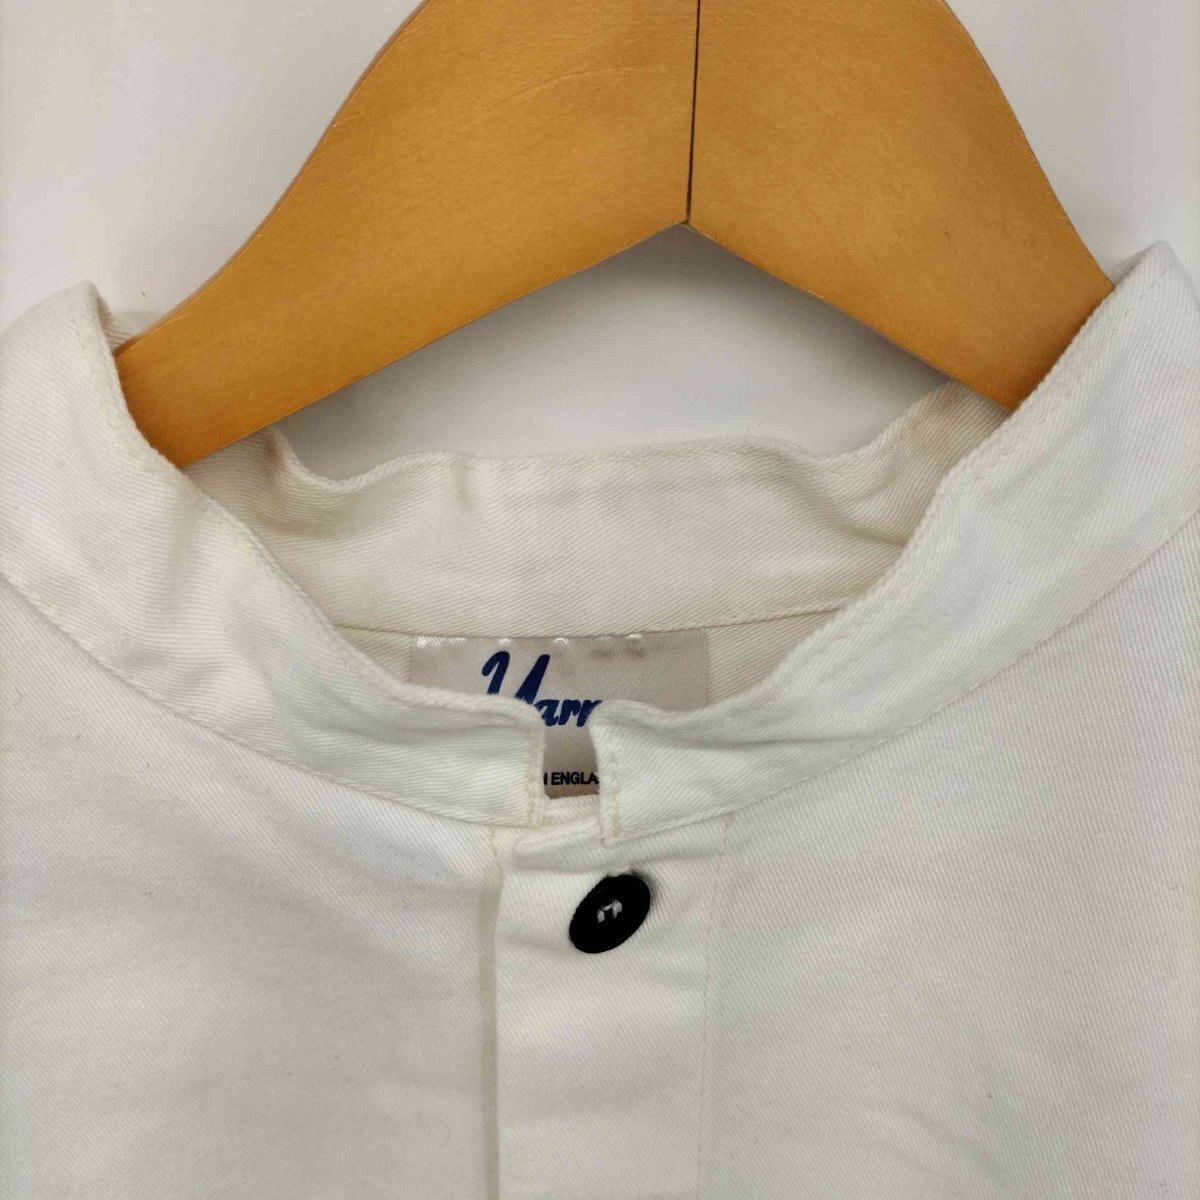 yarmo(ヤーモ) イギリス製 シャツ ワンピース コート スモック ドレス レディース 表記無 中古 古着 0525_画像3